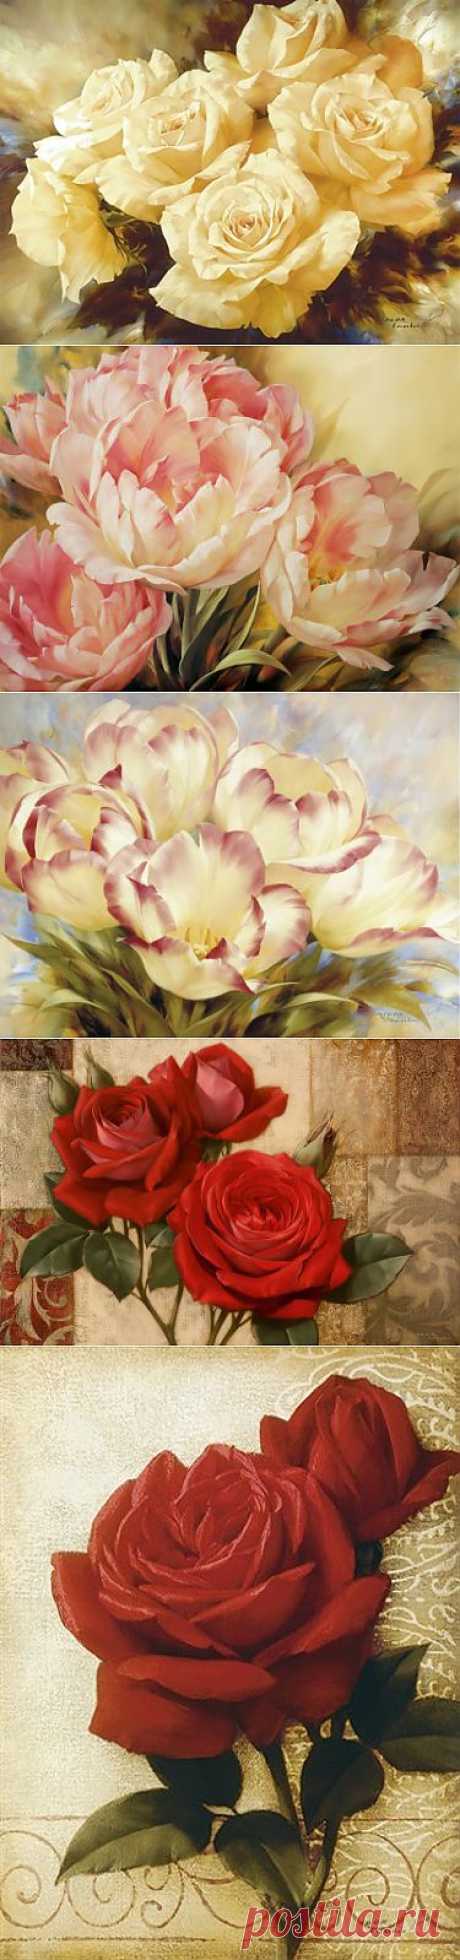 Удивительно красивые картины художника Игоря Левашова | Цветы.